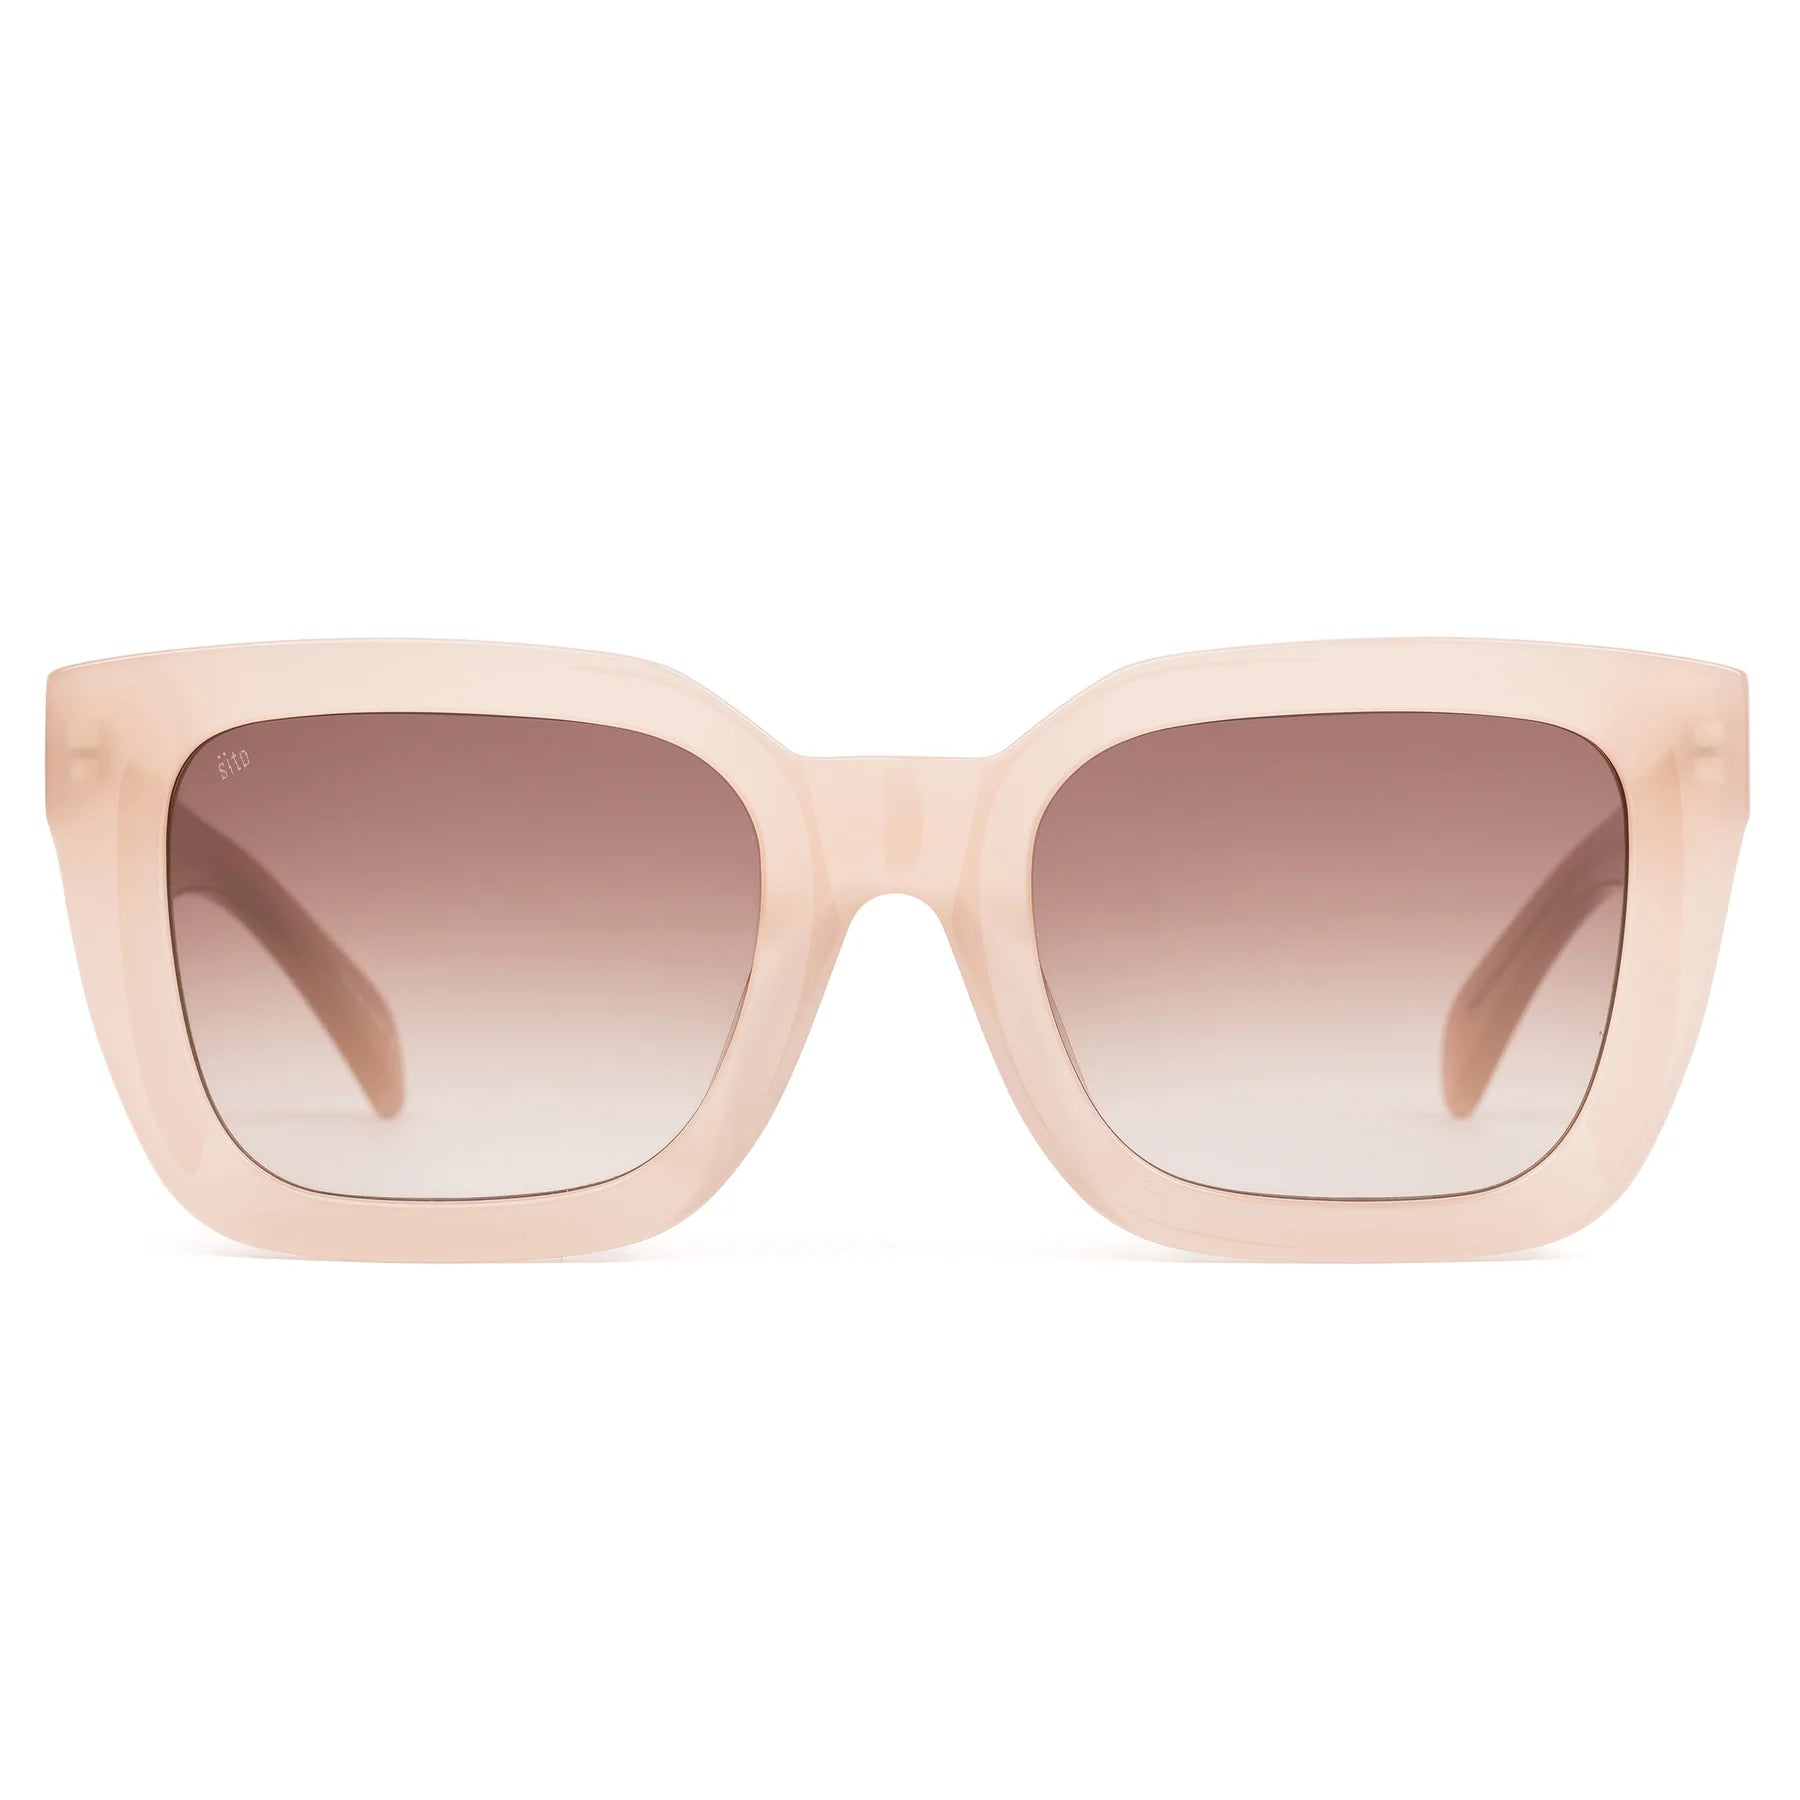 Harlow-Cream Sunglasses Sito 